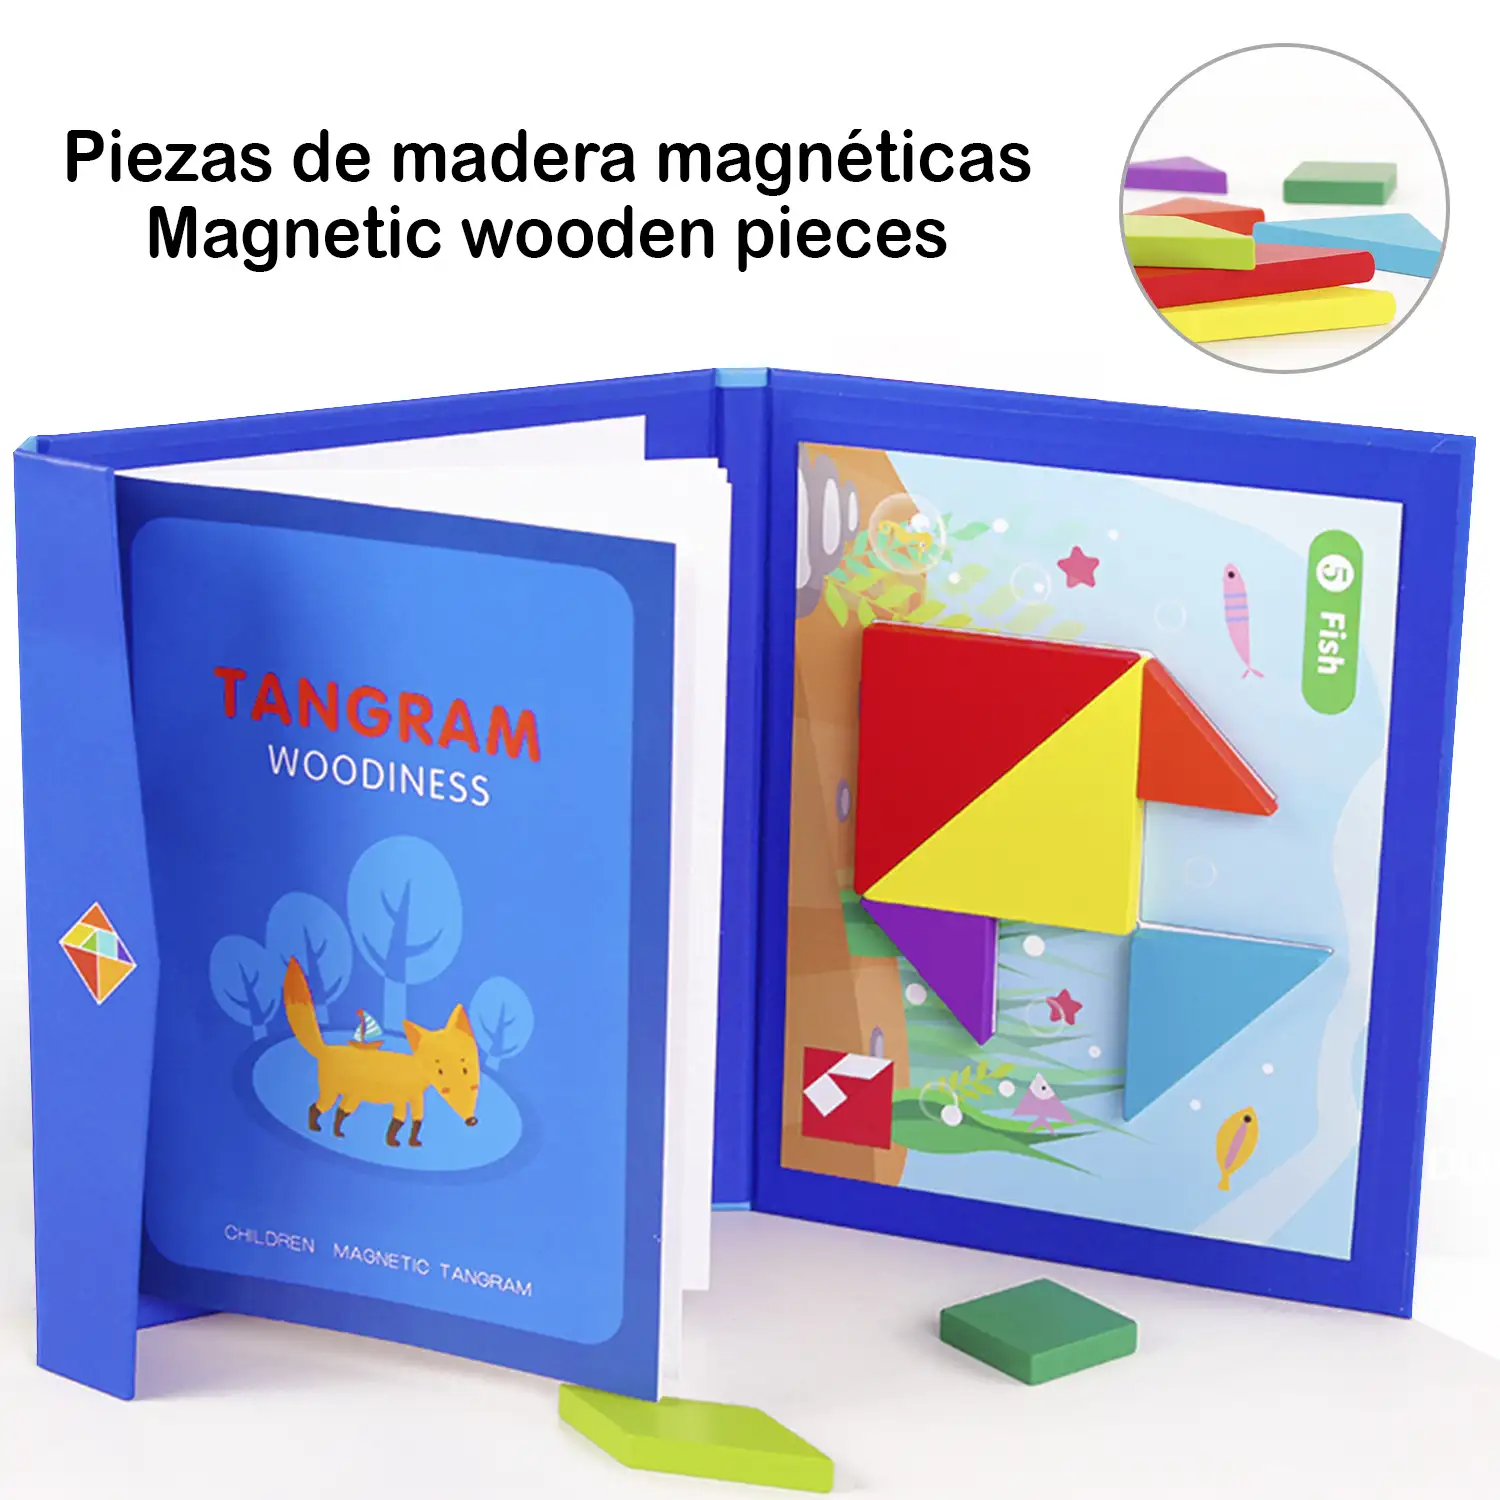 Libro con Tangram de madera magnético, nuevo desafío de completar fichas con dibujos. Incluye múltiples desafíos clásicos.